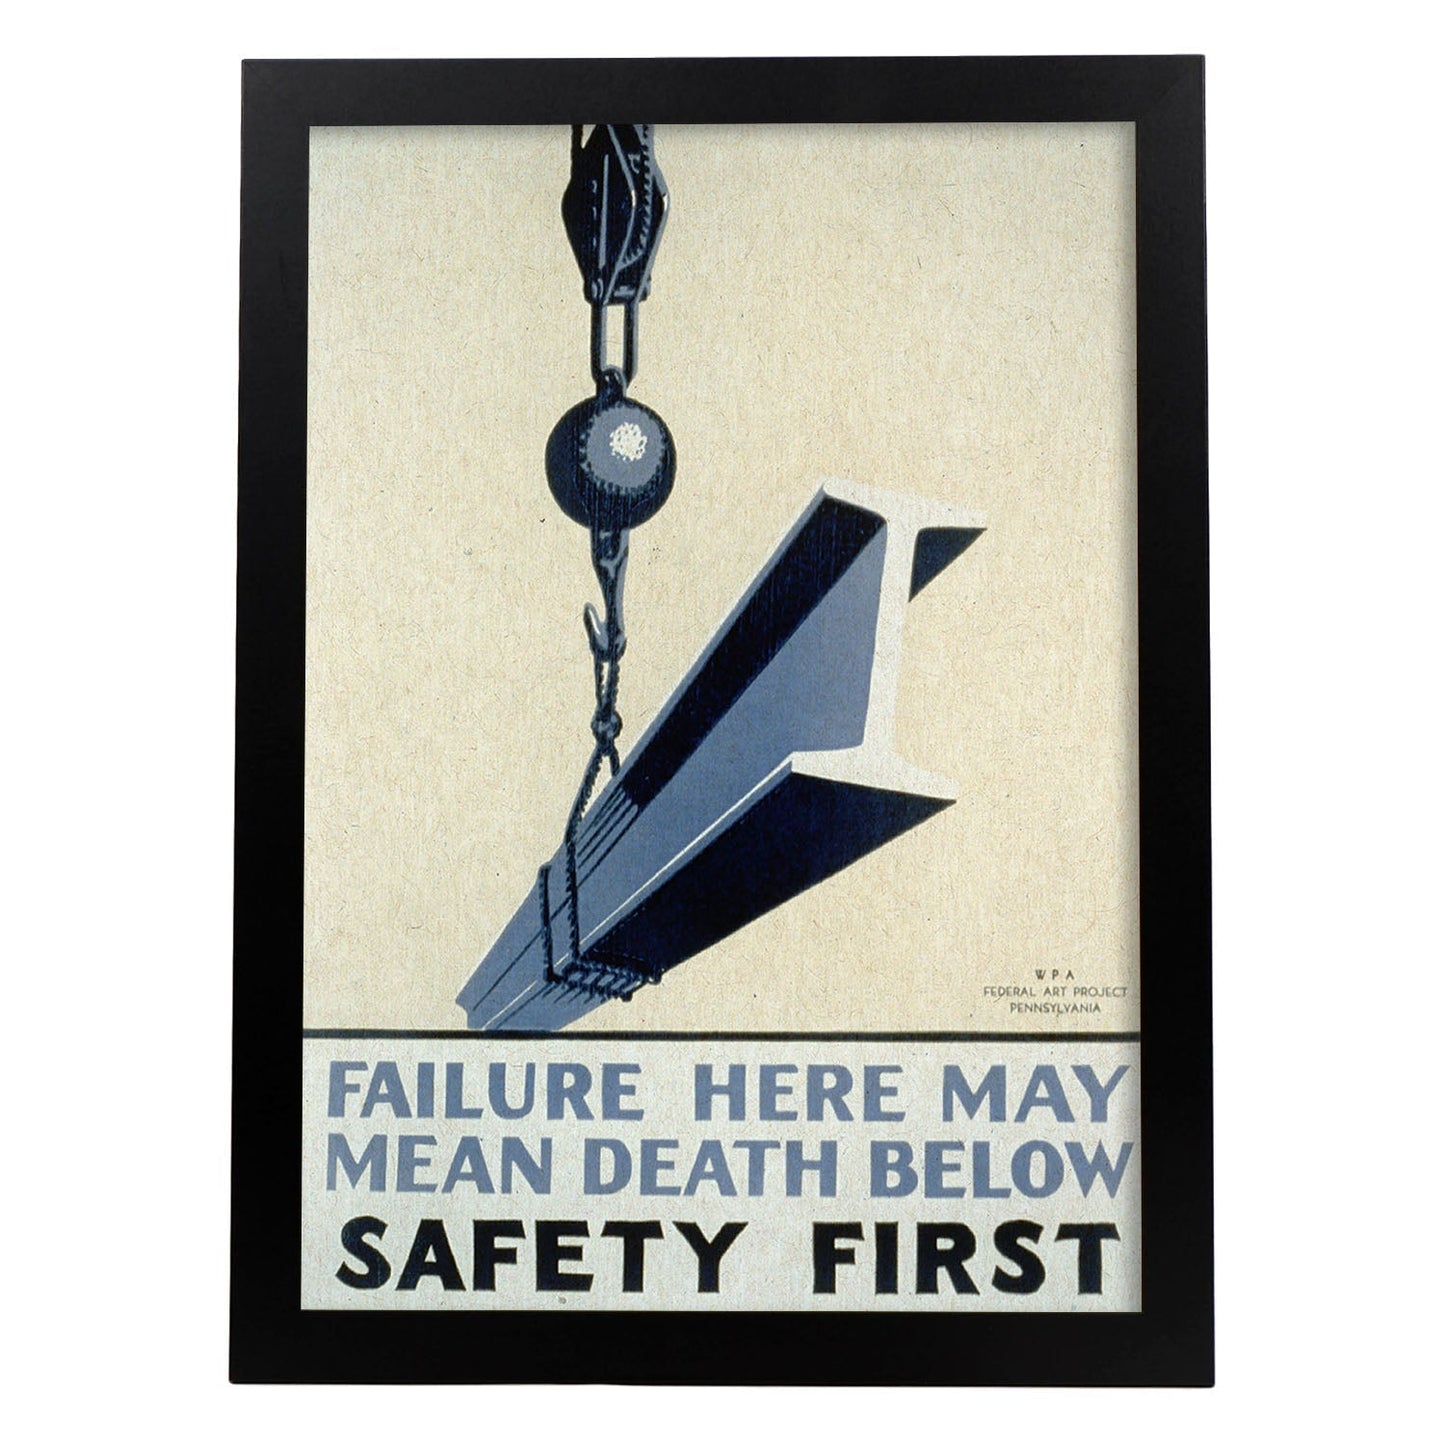 Poster vintage. Cartel vintage del departamento federal de Pennsylvania "Safety first".-Artwork-Nacnic-A3-Marco Negro-Nacnic Estudio SL